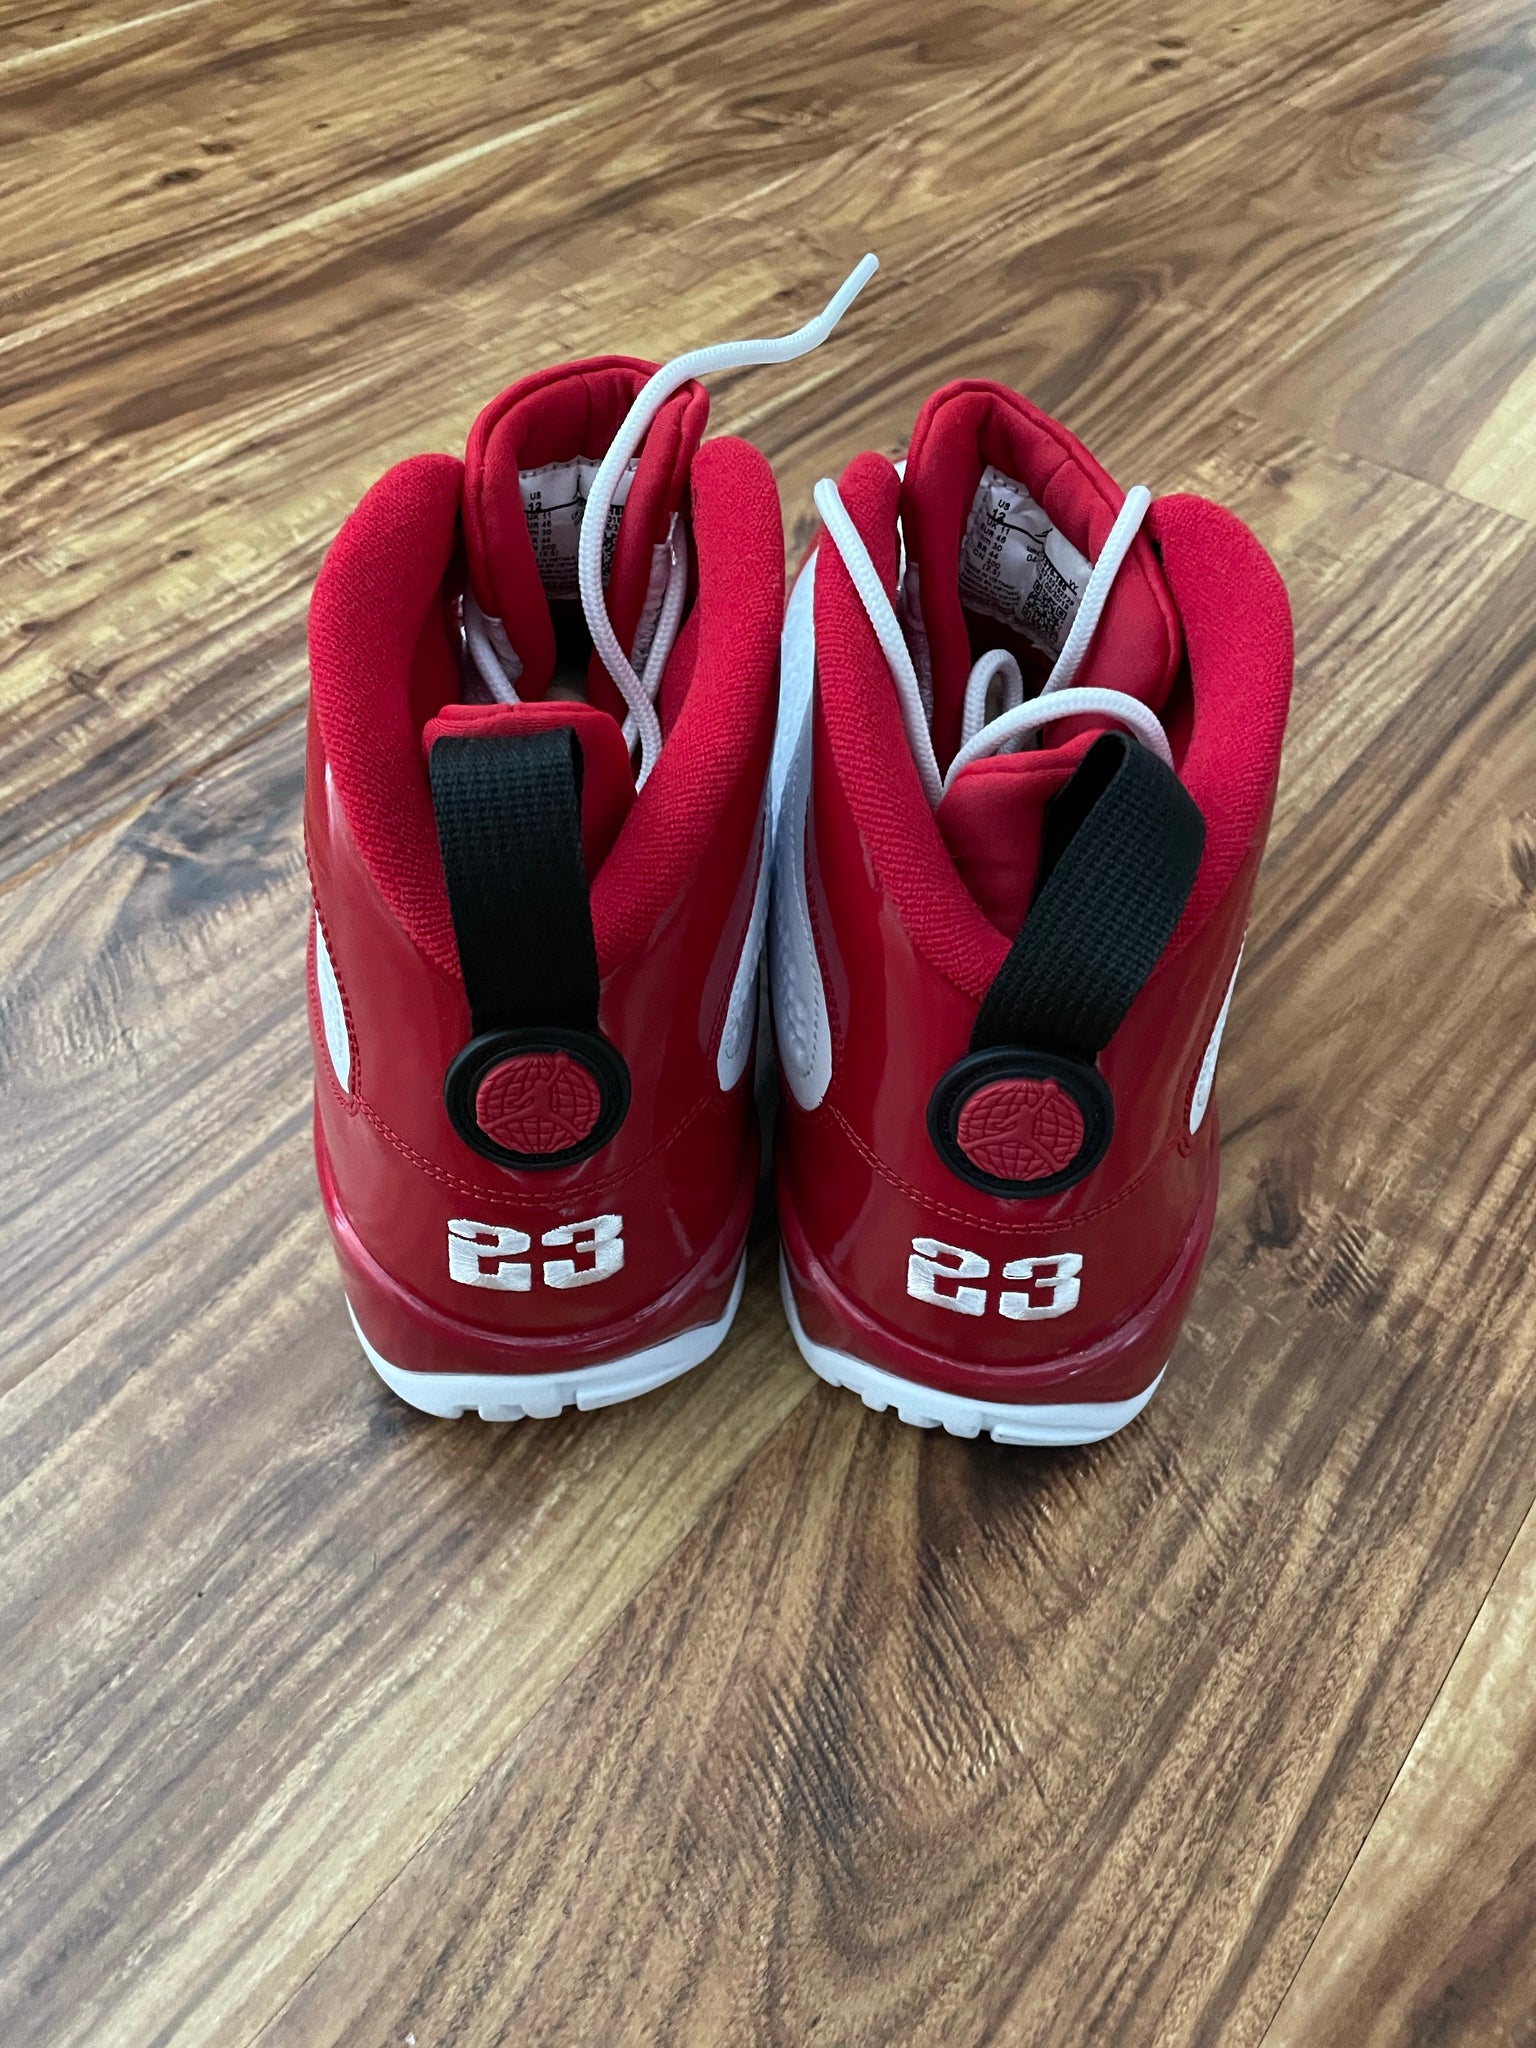 DS 2019 Jordan Retro 9 Gym Red